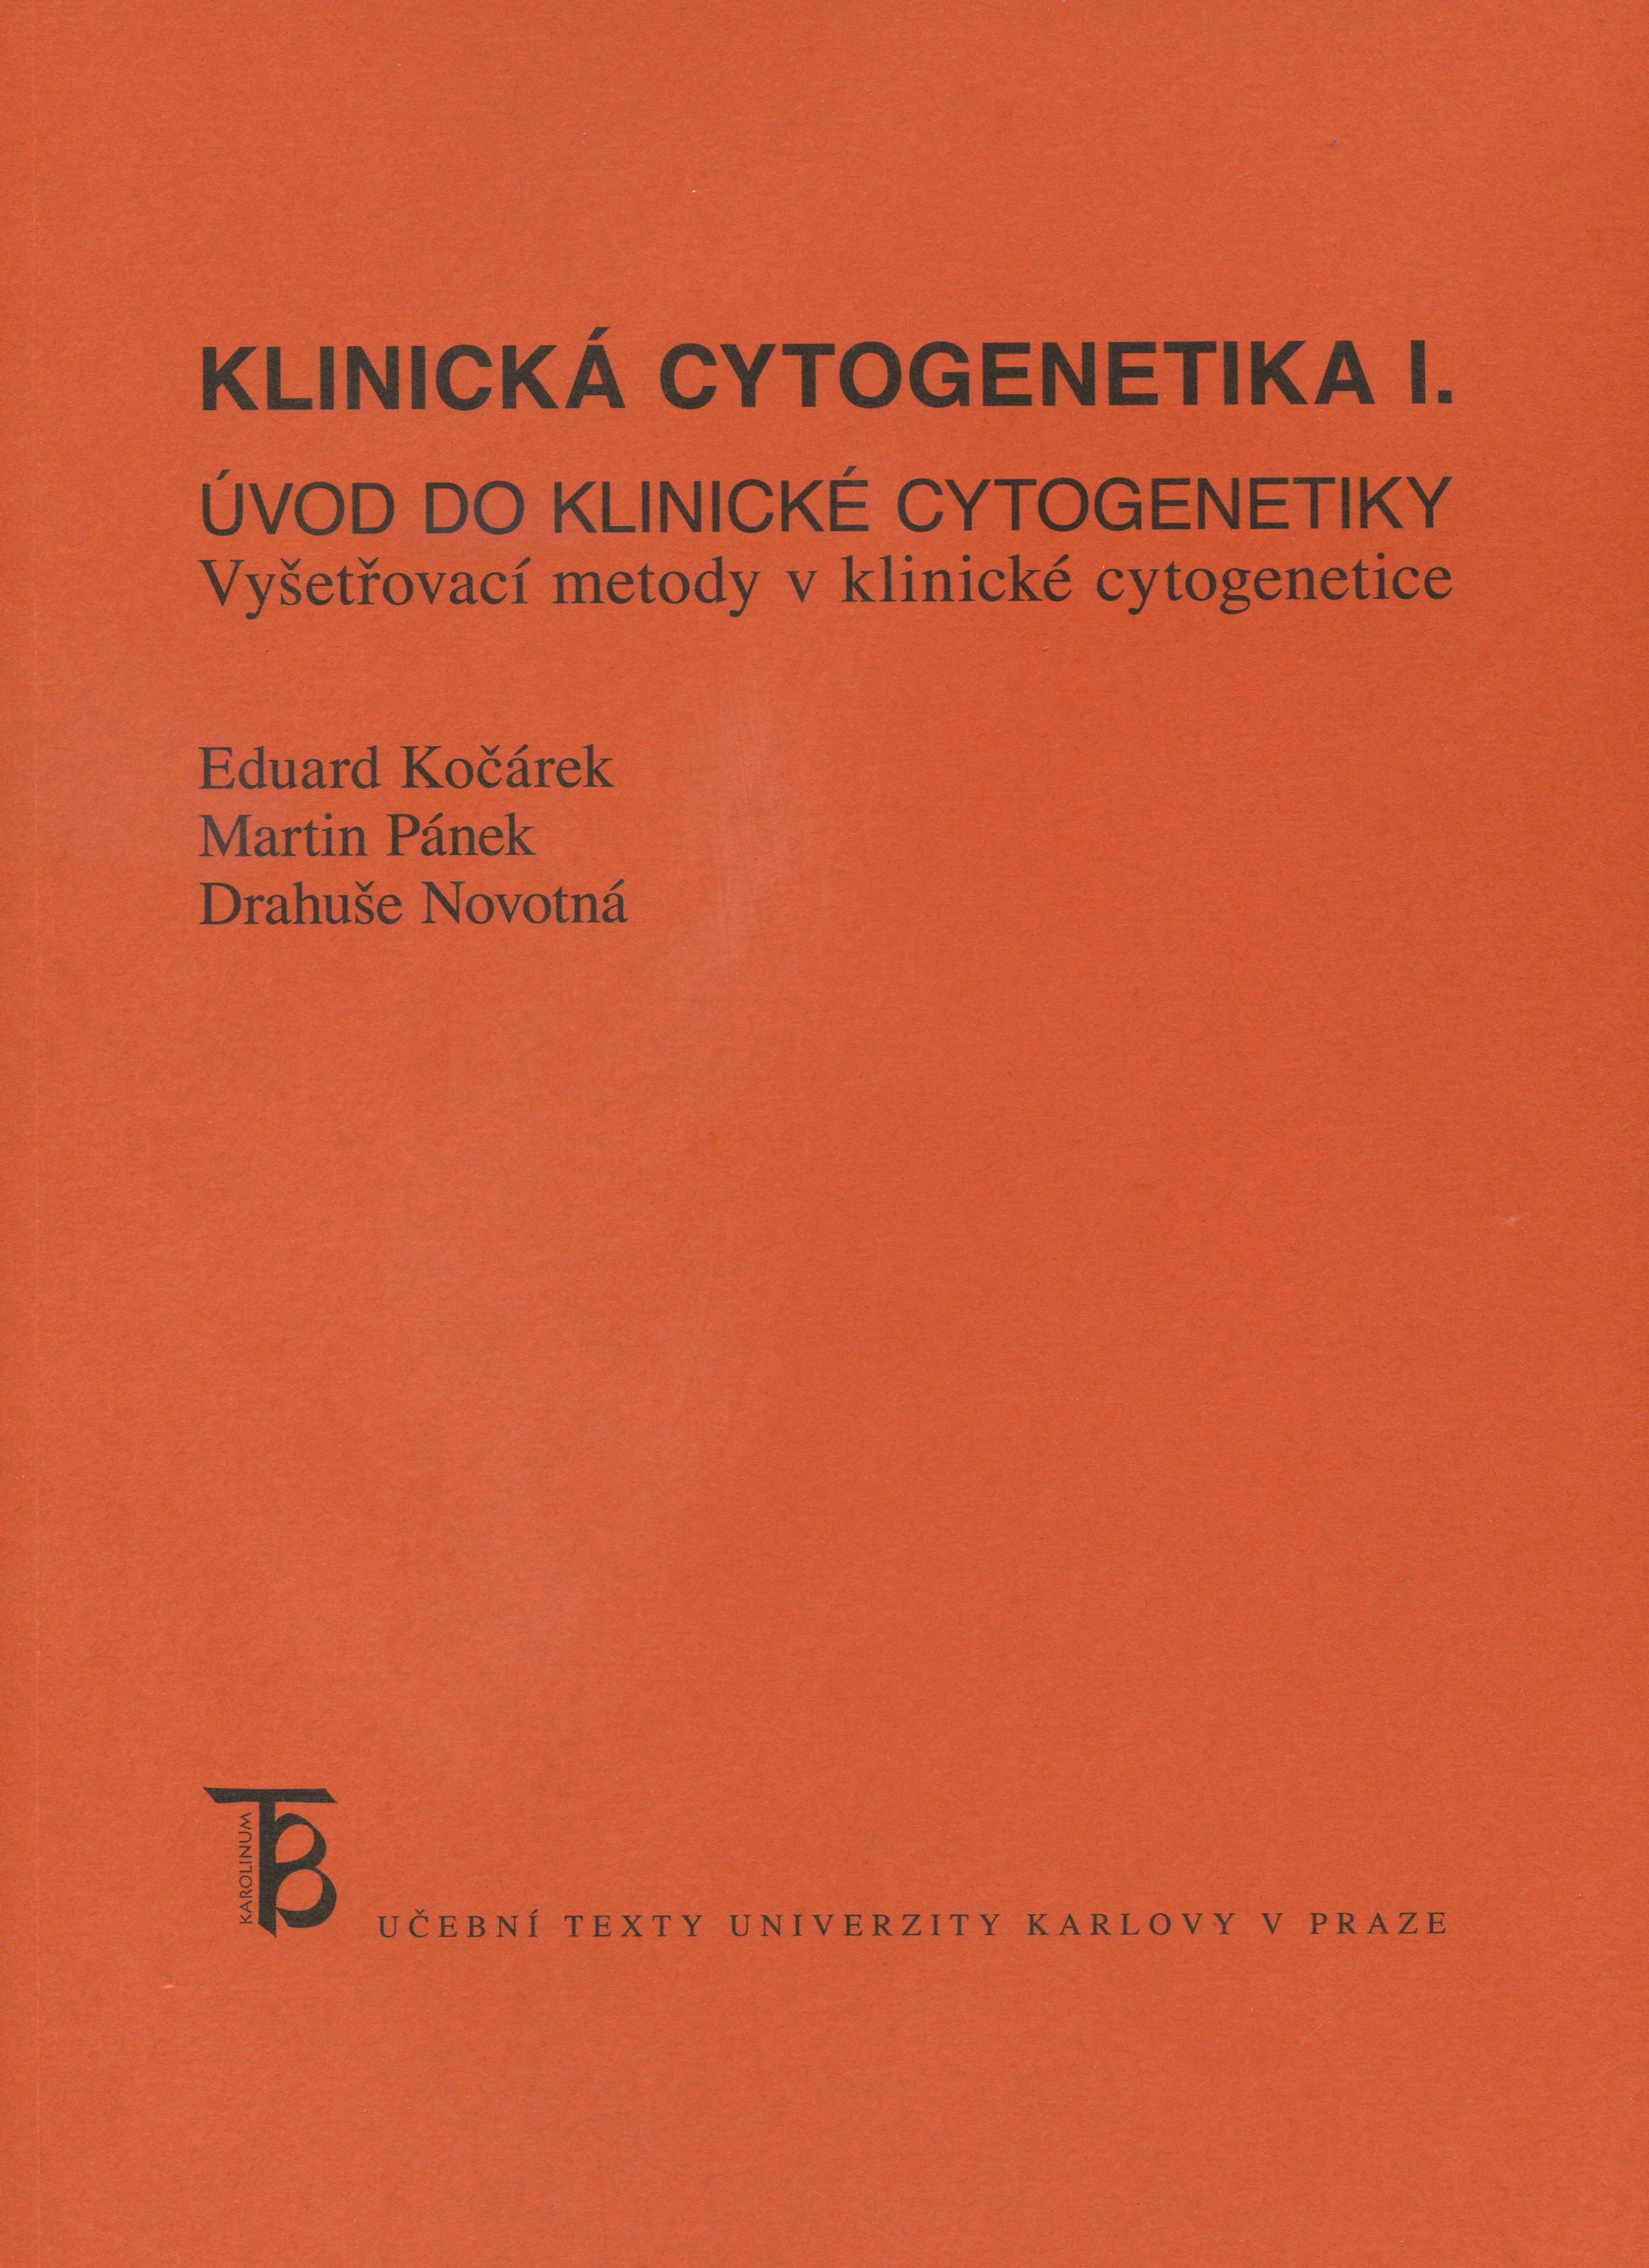 Klinická cytogenetika I.